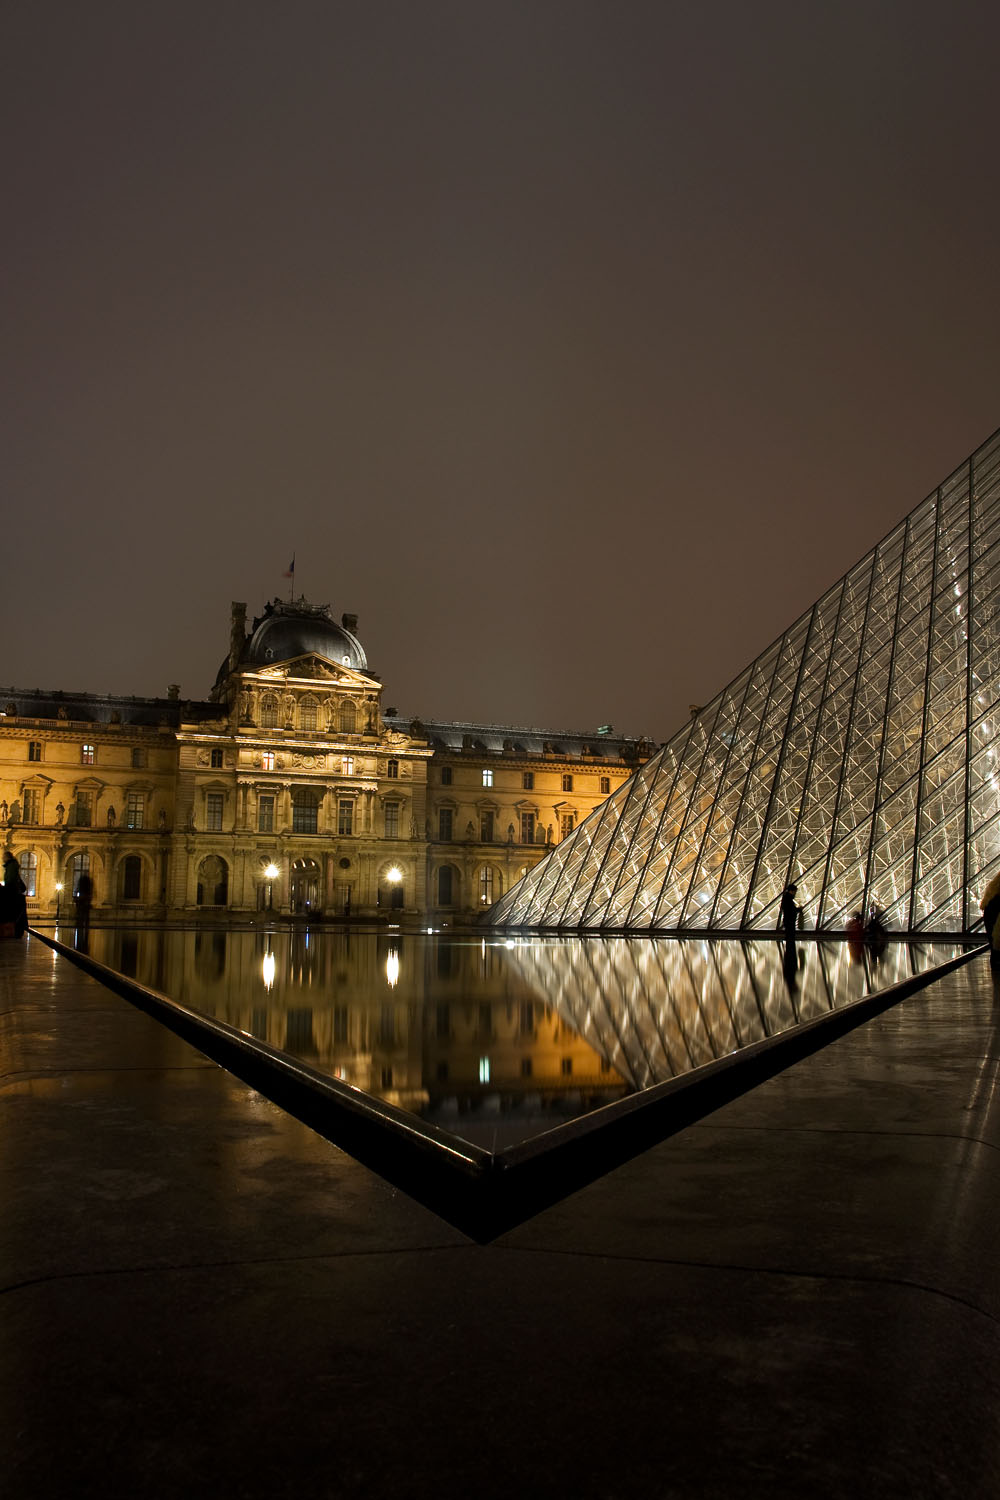 Louvre - Paris, France